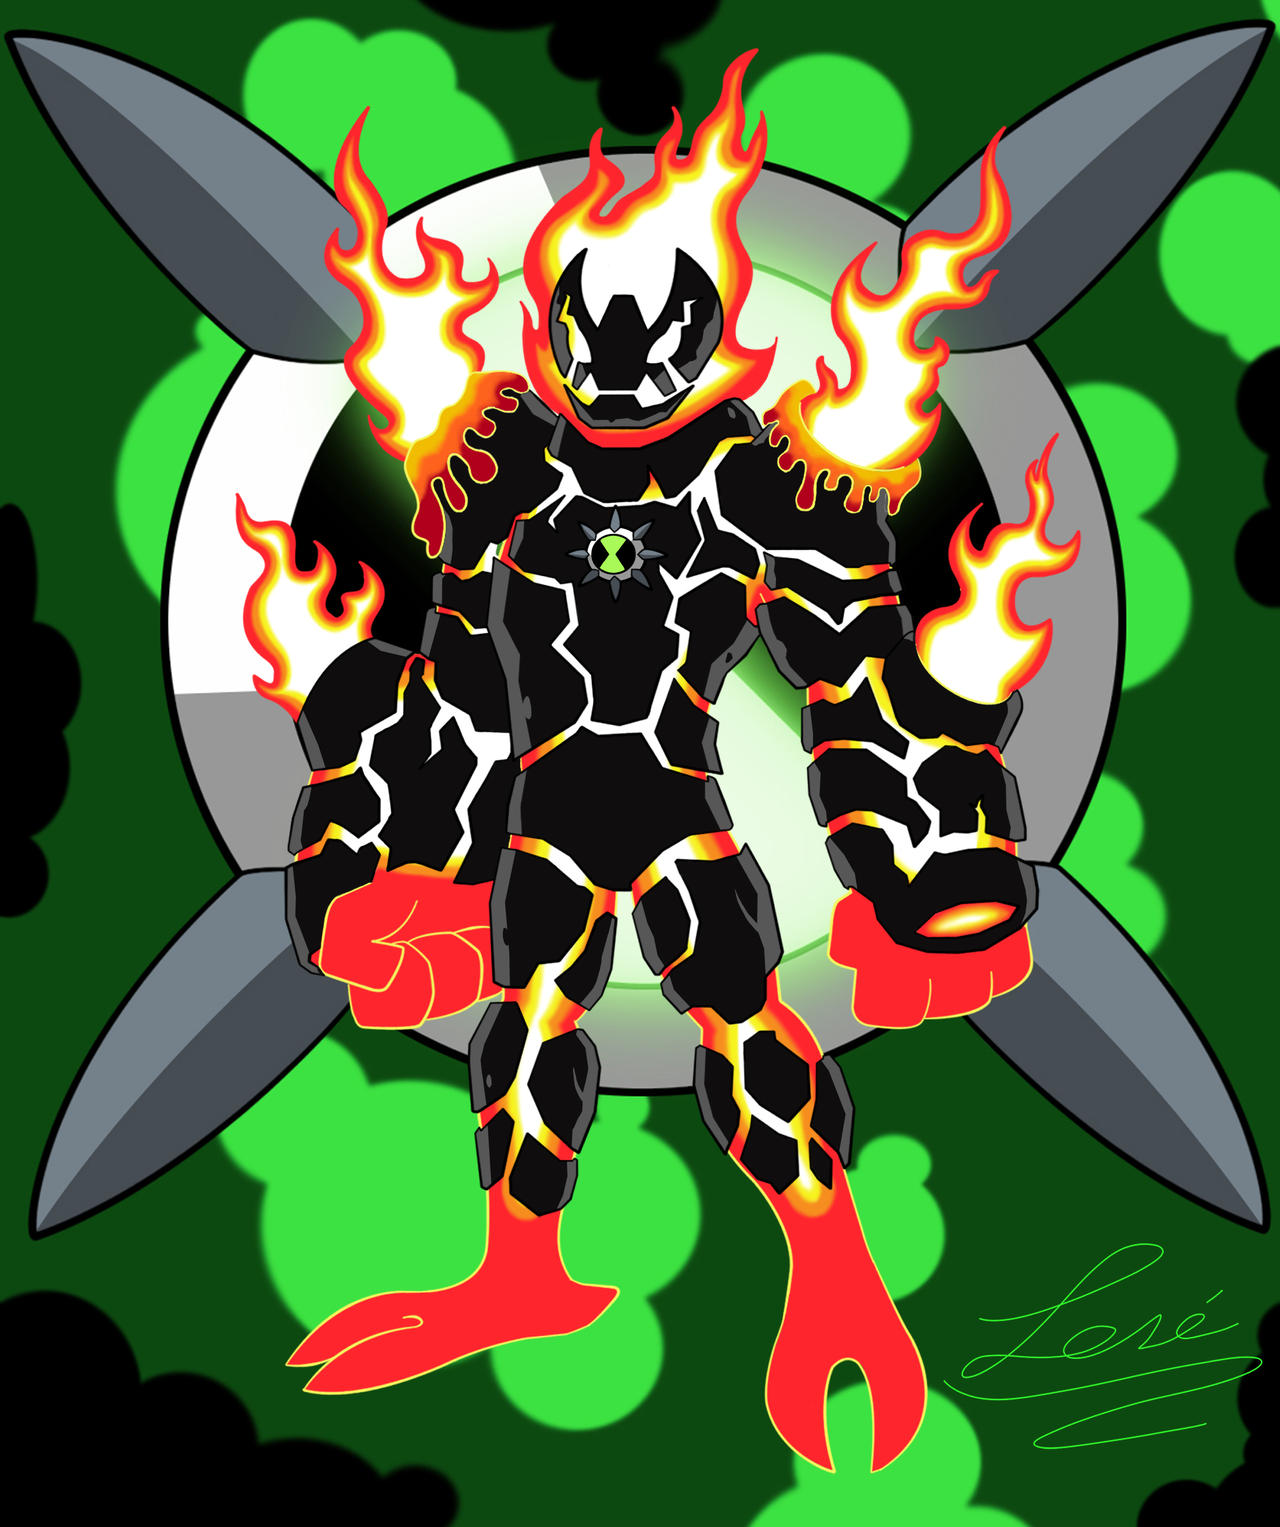 Ben 10 Alien - Fuego Supremo by Crisaurus006 on DeviantArt